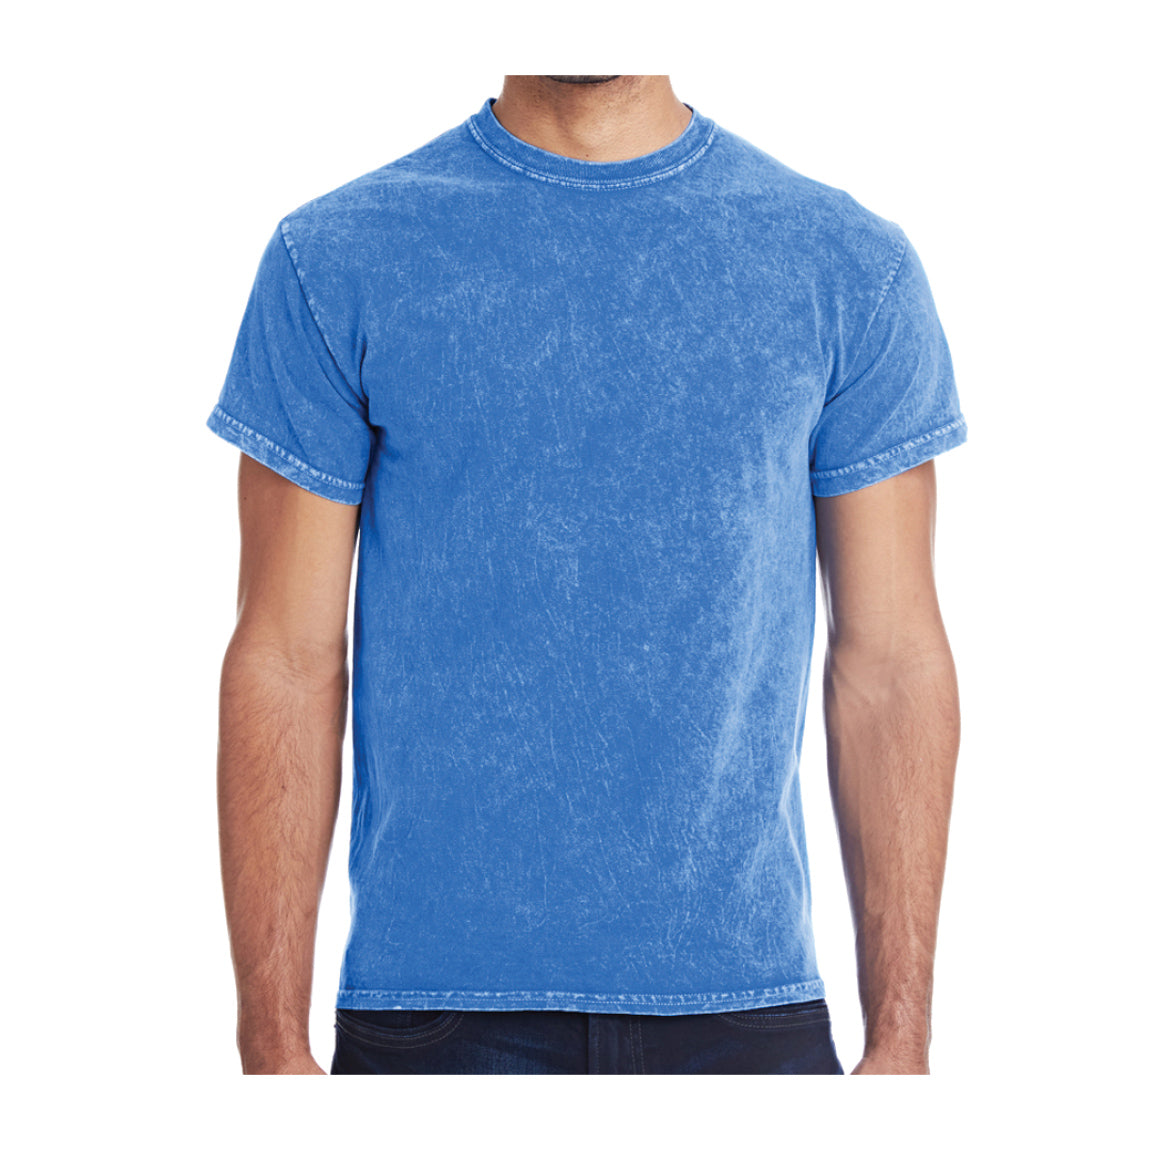 Tie-Dye Adult Cotton Vintage Wash T-Shirt